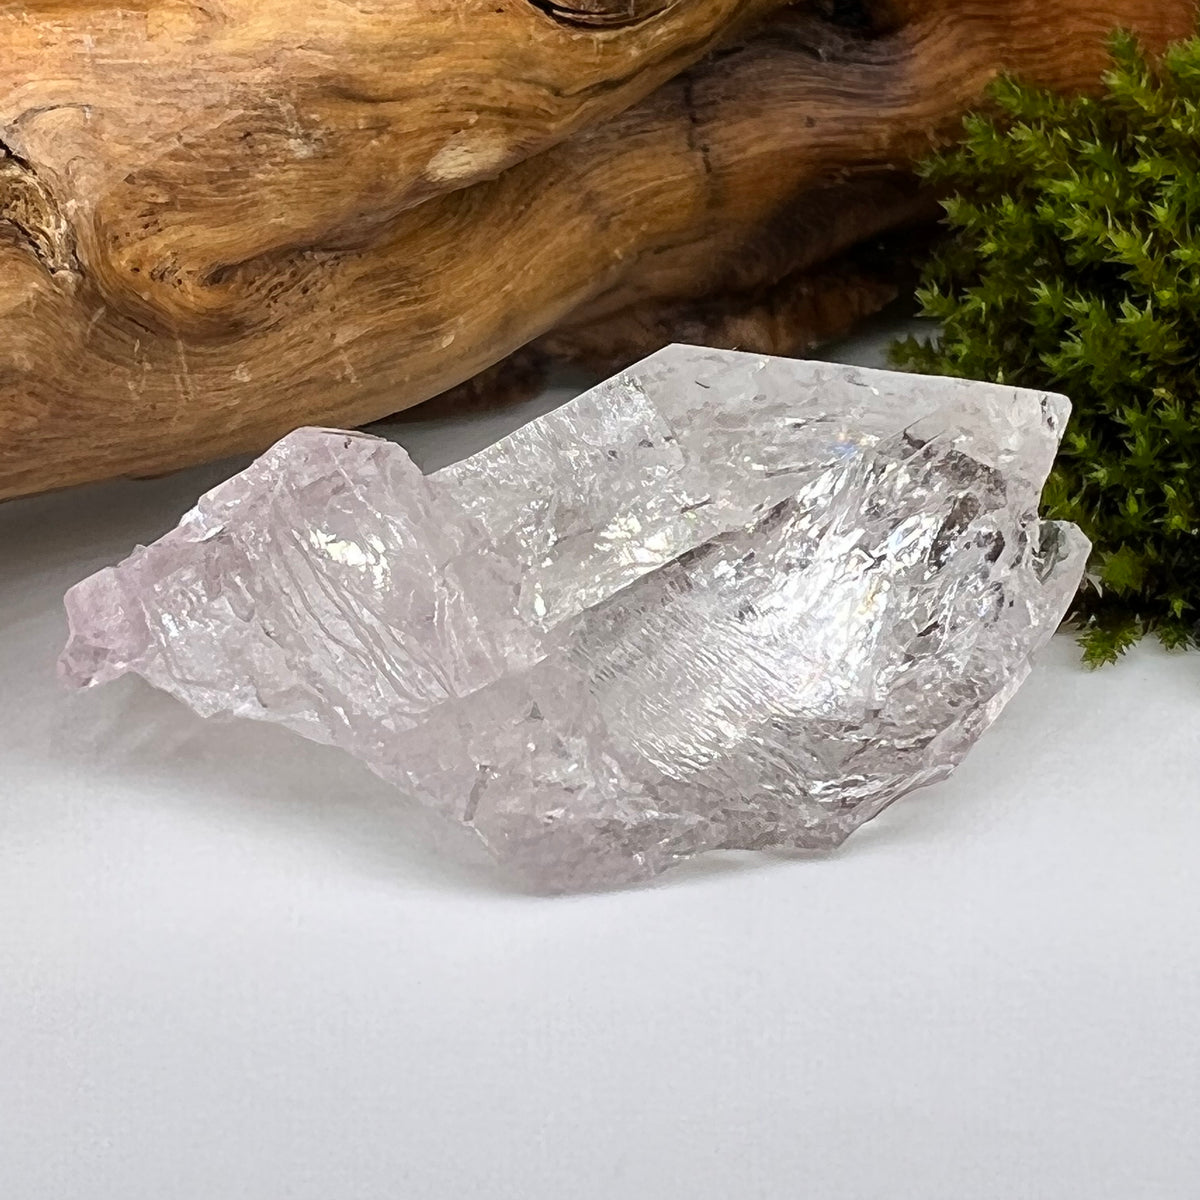 Crystalized Rose Quartz Clear & Gentle Pink #42-Moldavite Life